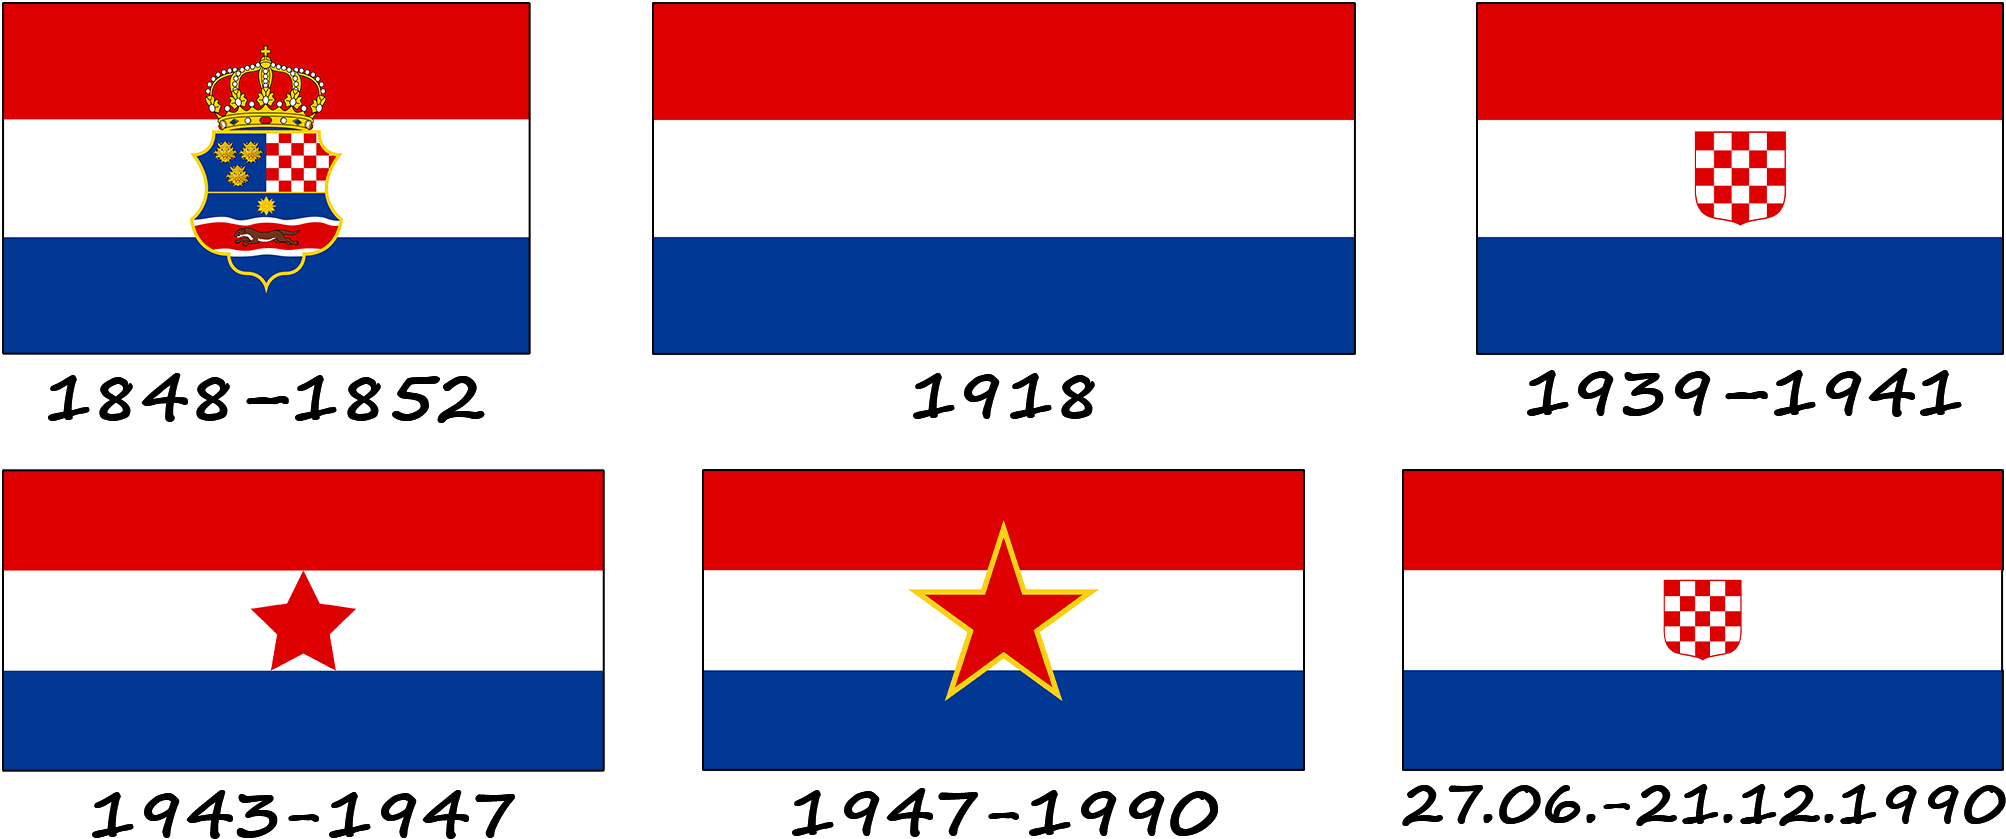 Historia de la bandera croata